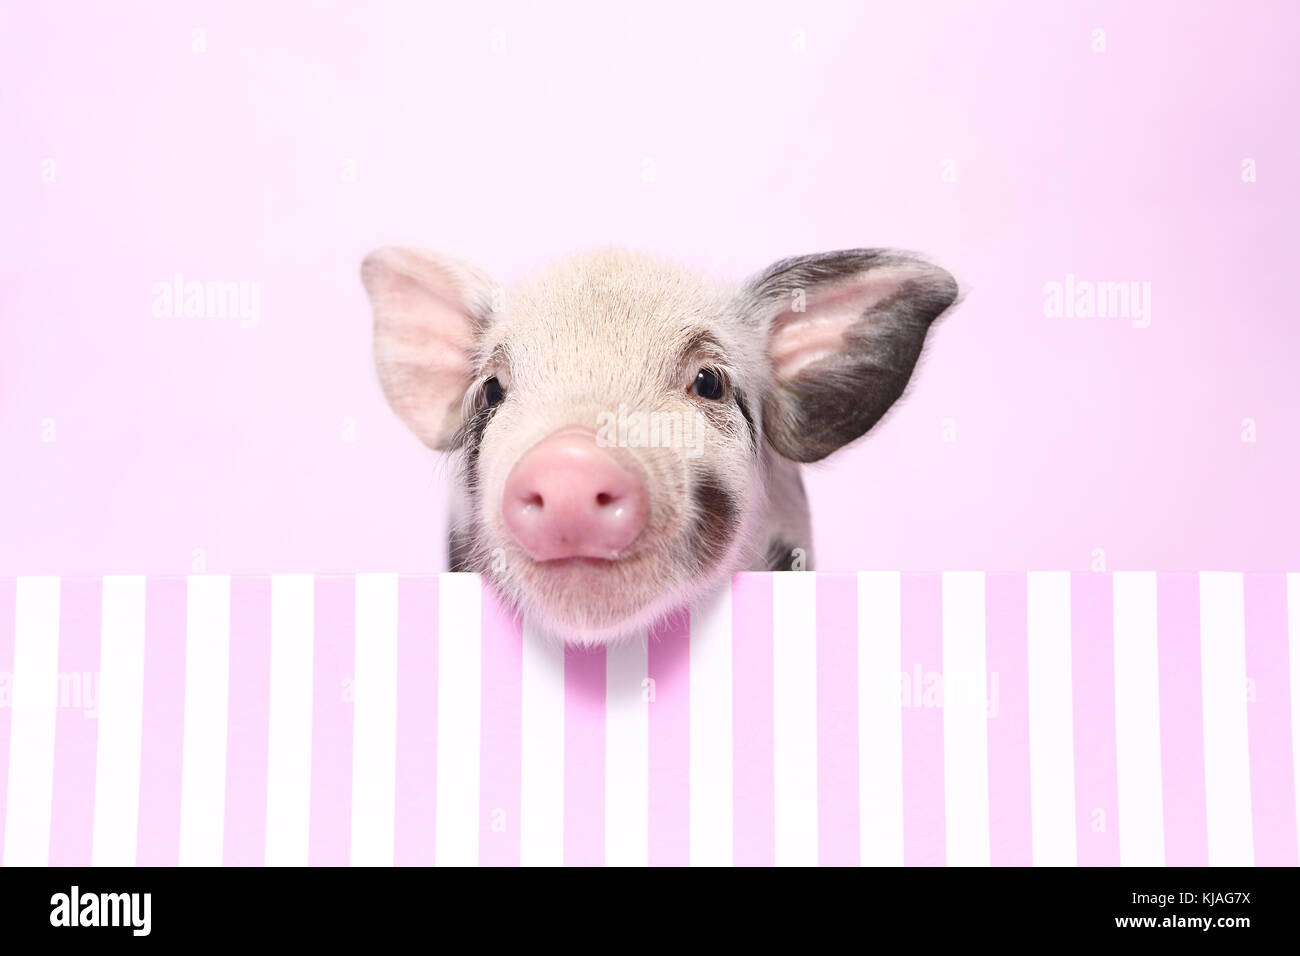 Hausschwein, Turopolje x?. Ferkel in einem rosa-weiß gestreift. Studio Bild gegen einen rosa Hintergrund gesehen. Deutschland Stockfoto